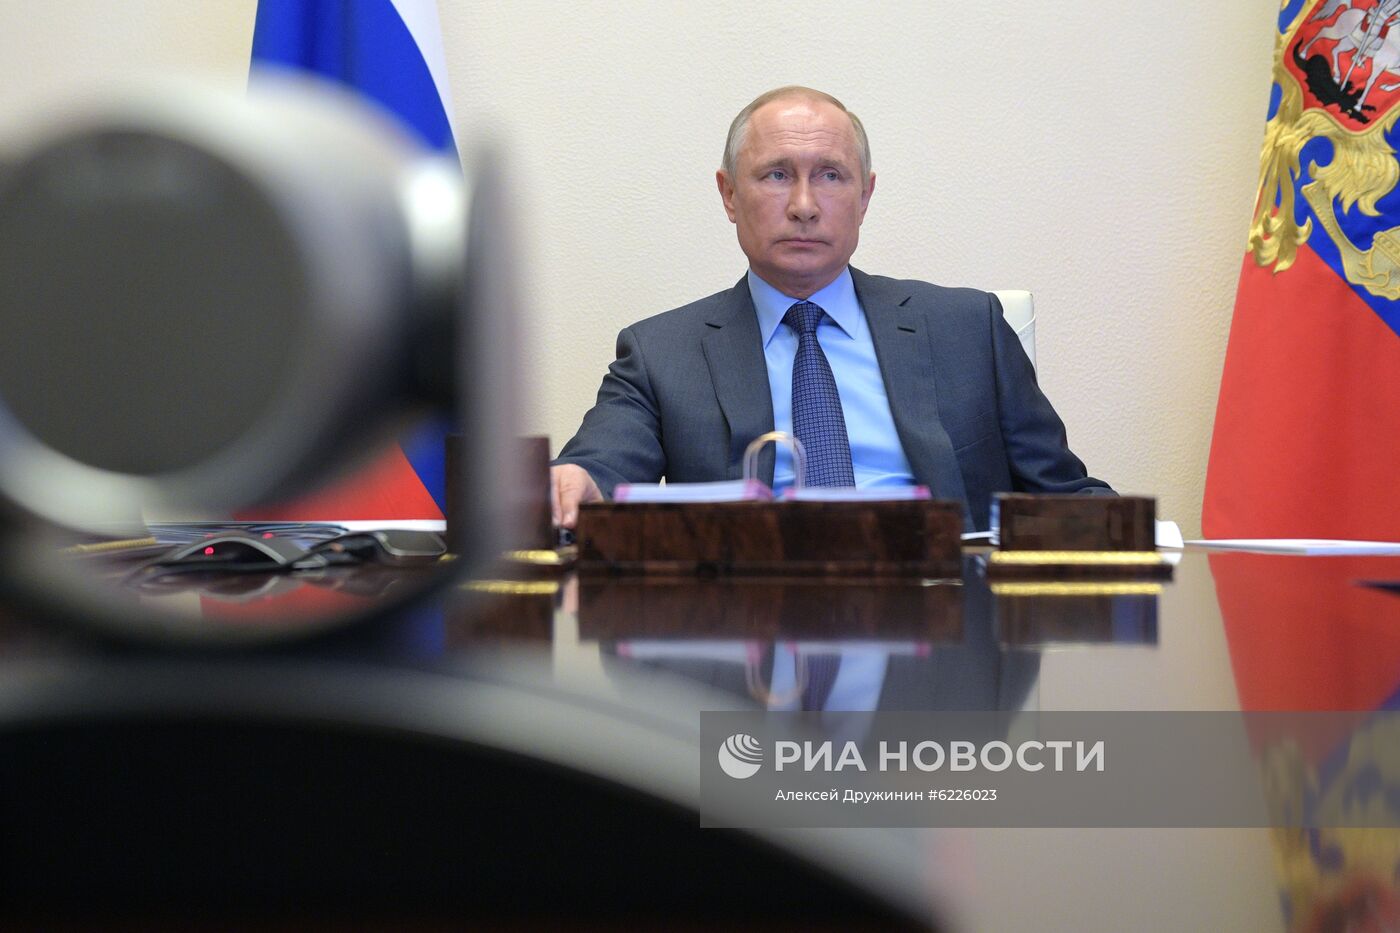 Президент РФ В. Путин провел встречу с губернатором Приморского края О. Кожемяко